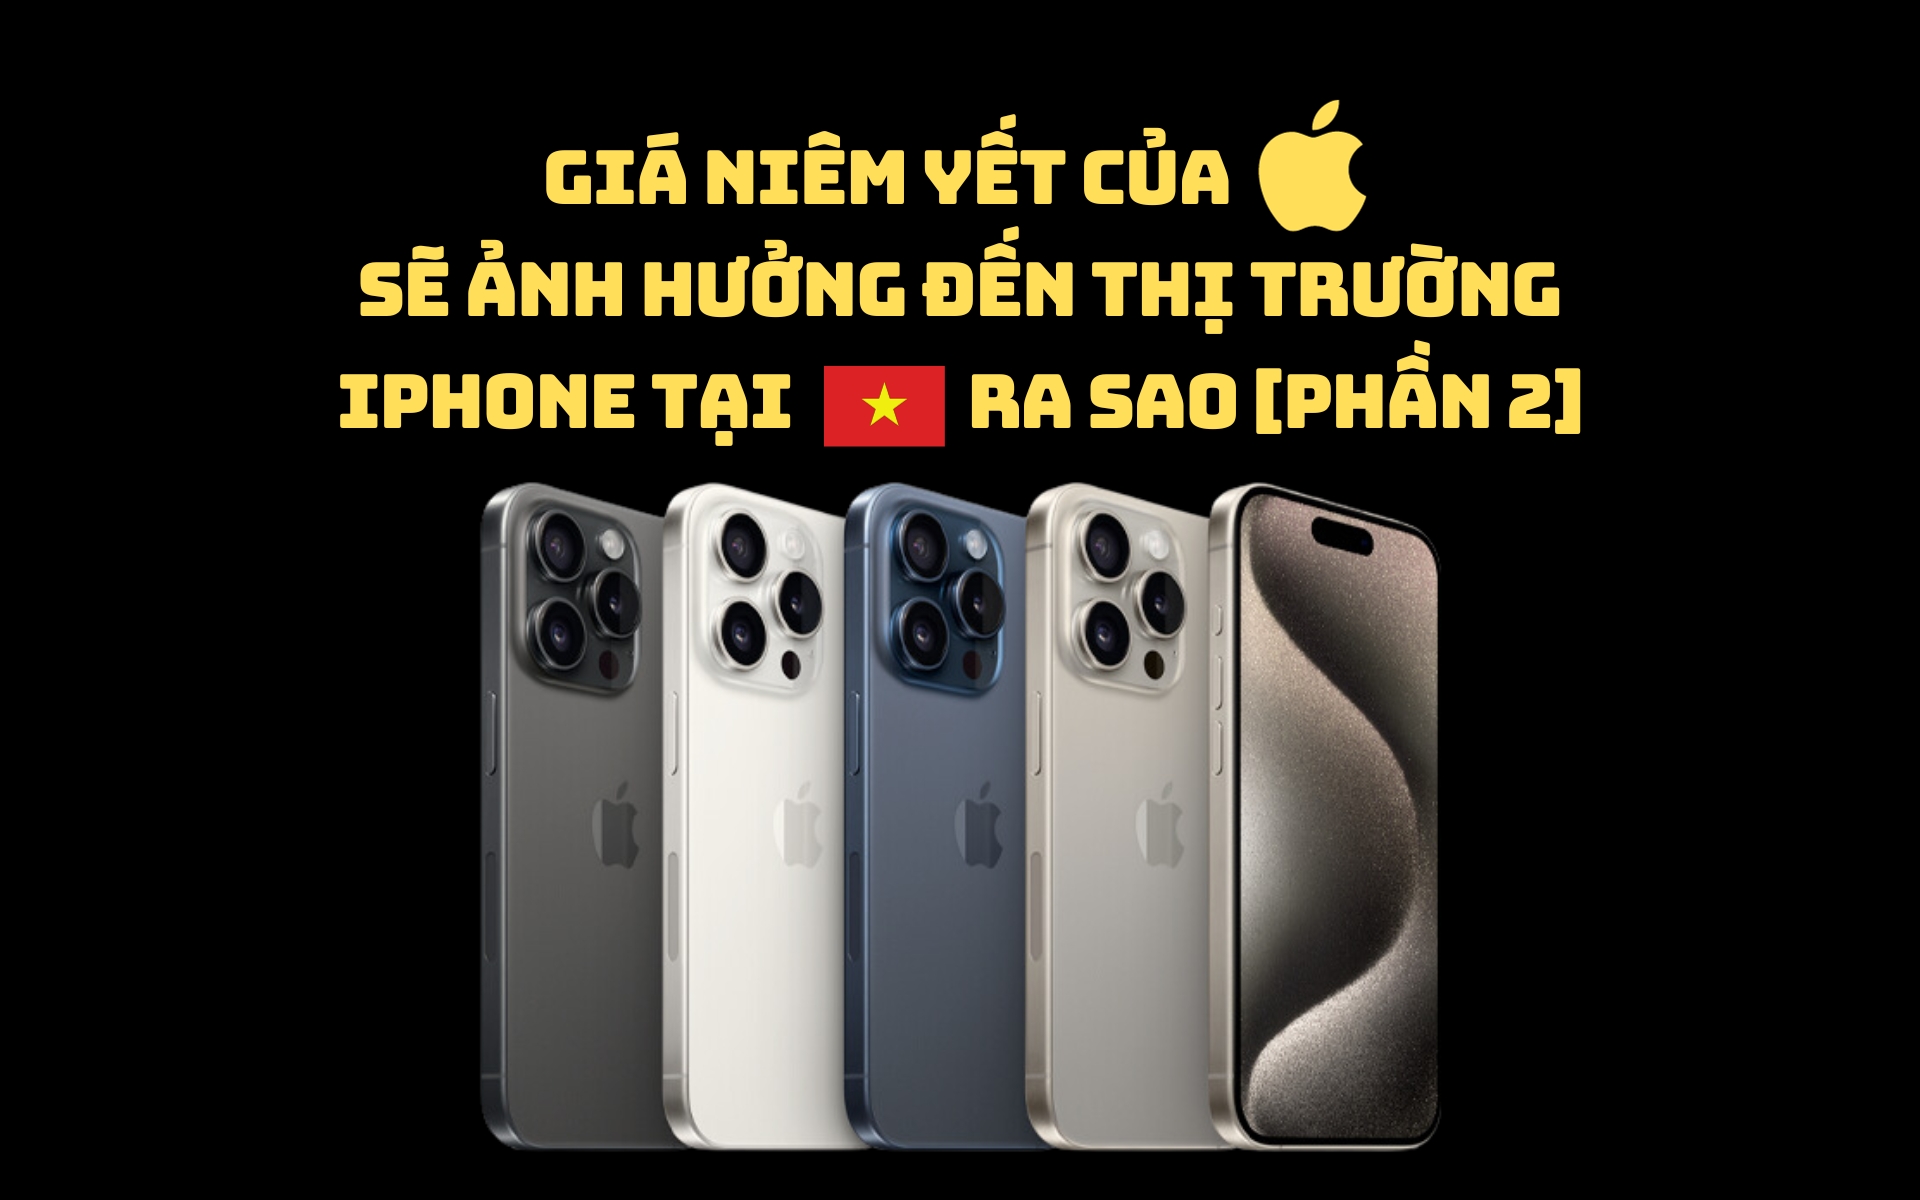 [Phần 2] Giá niêm yết của Apple Store ảnh hưởng đến thị trường iPhone tại Việt Nam ra sao